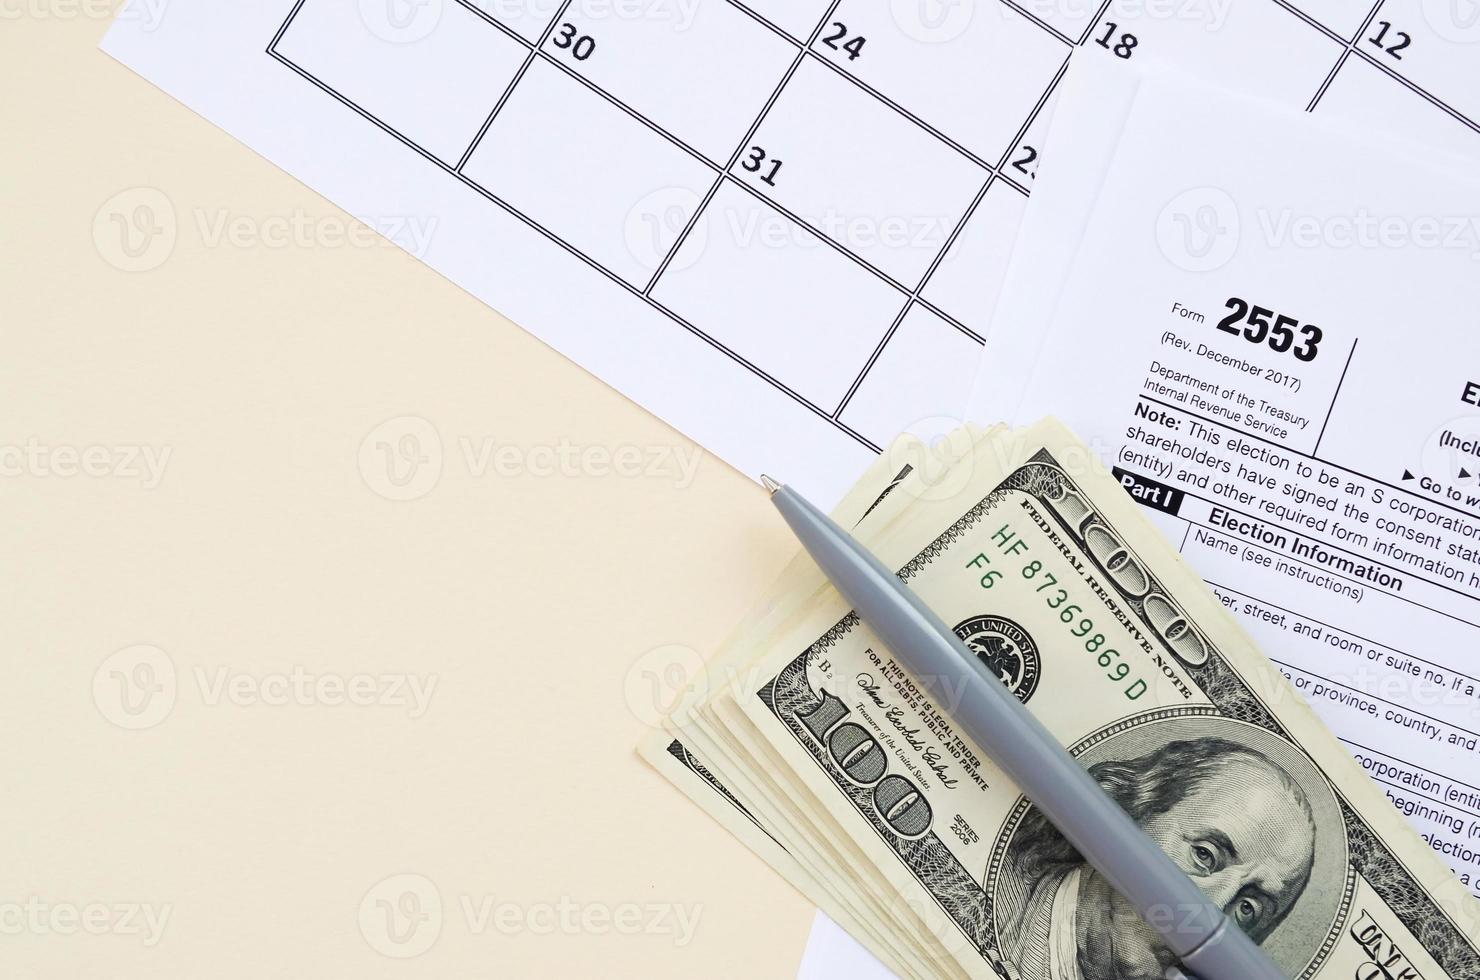 Formulaire irs 2553 élection par une petite entreprise impôt sur les sociétés en blanc se trouve avec un stylo et de nombreux billets de cent dollars sur la page du calendrier photo